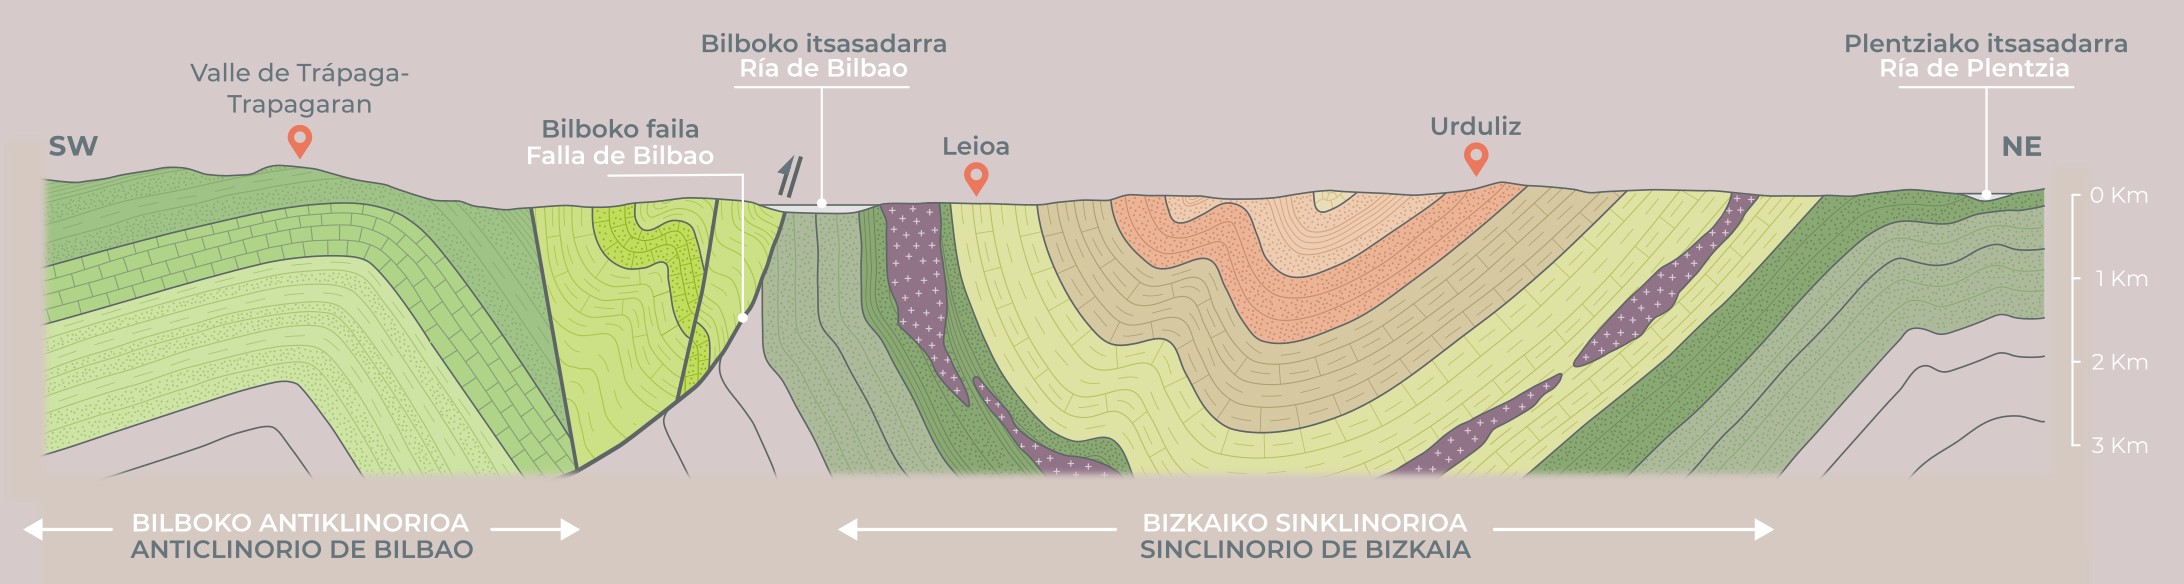 Ilustración 2: Corte geológico del entorno de la ría de Bilbao.